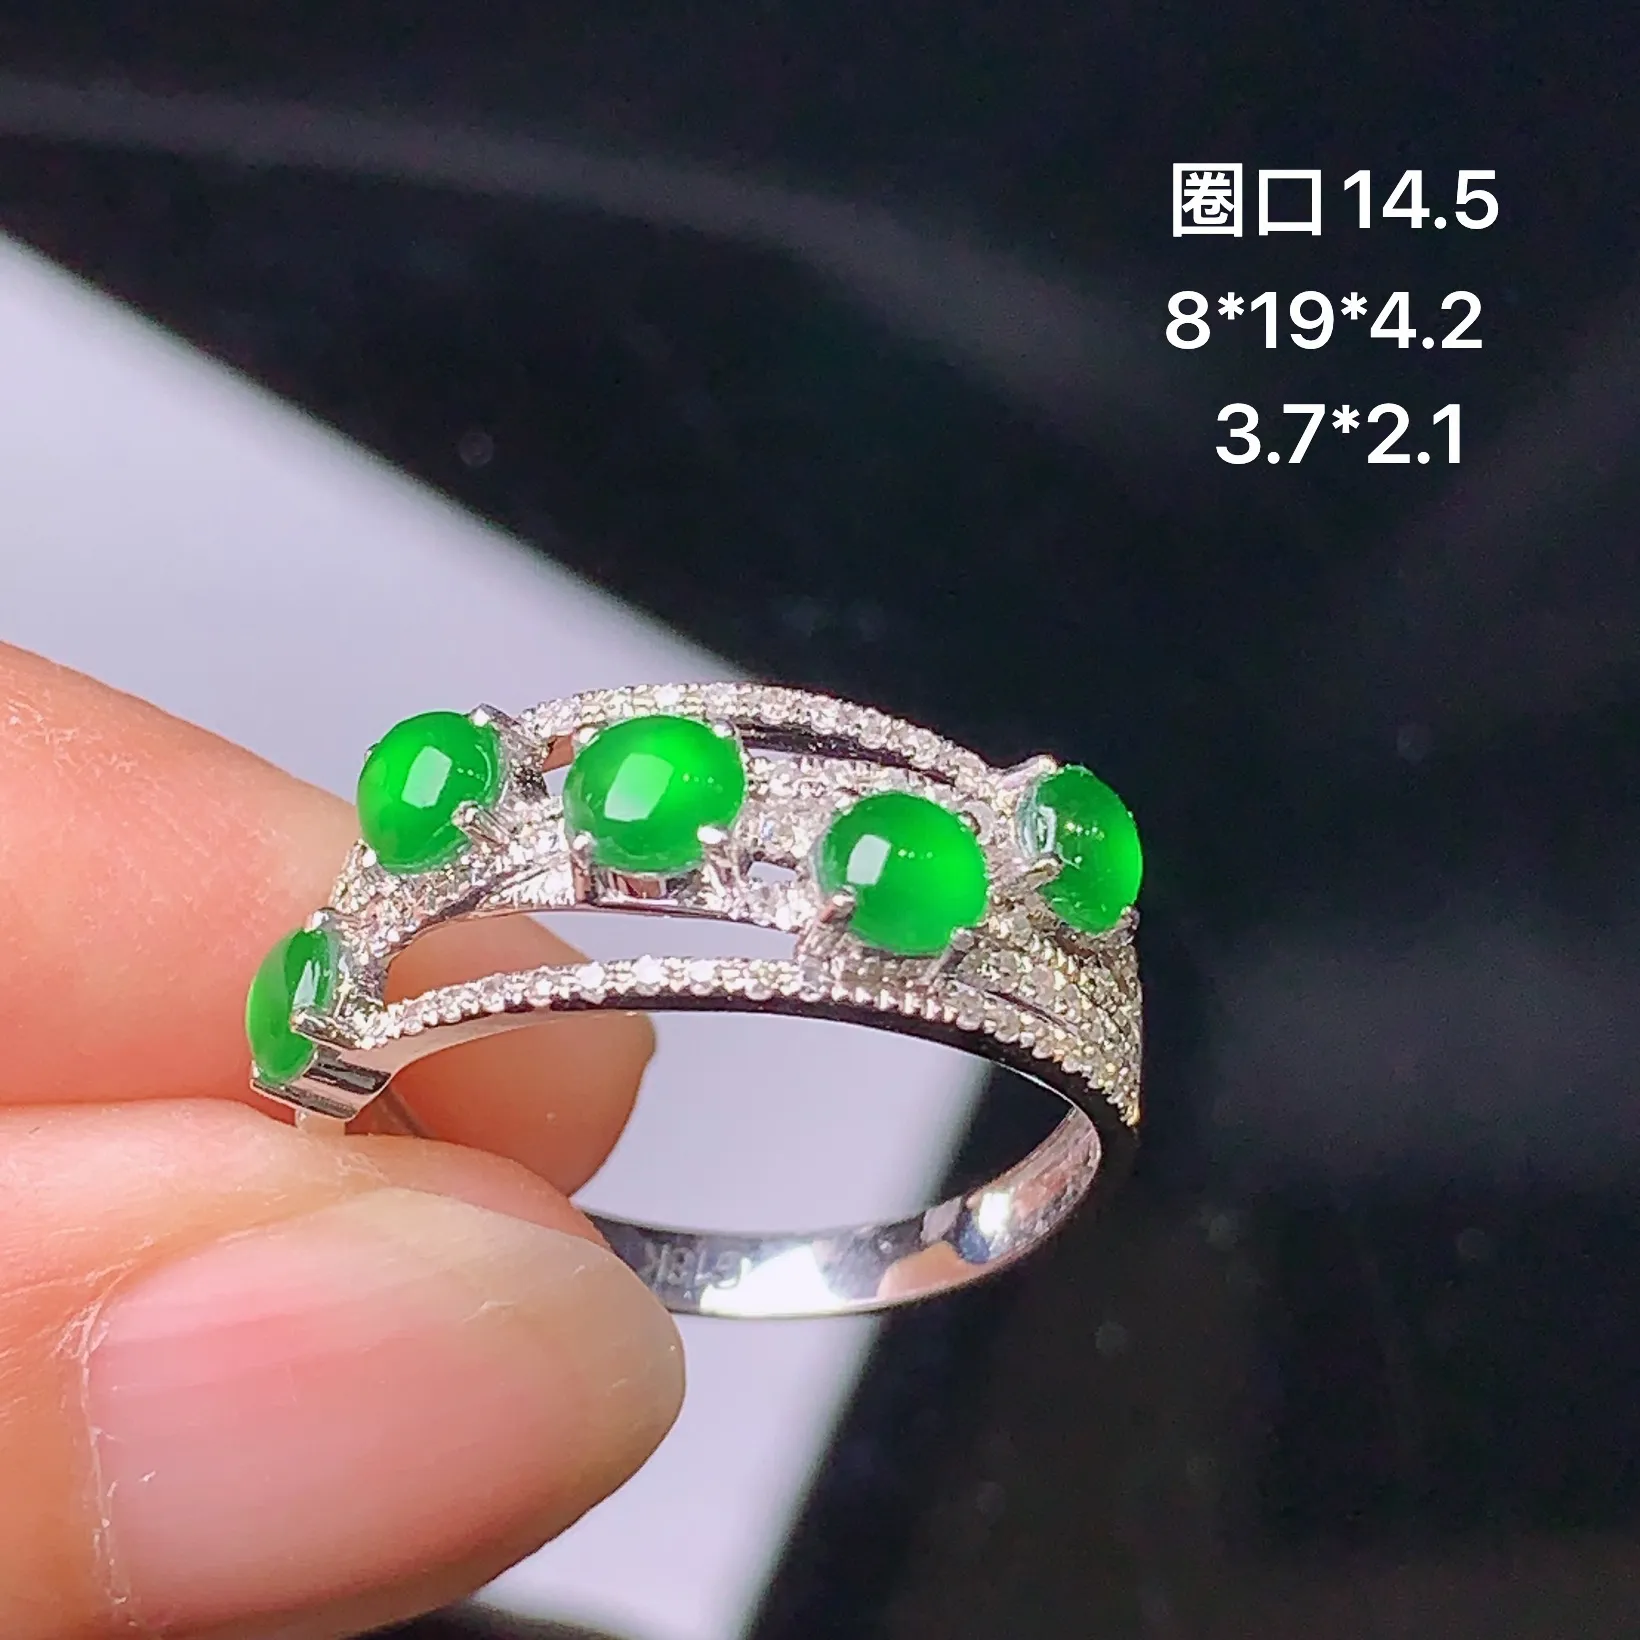 18k金钻镶嵌满绿蛋面组合戒指 玉质细腻 色泽艳丽 款式新颖 圈口1 4.5 整体尺寸8*19*4.2